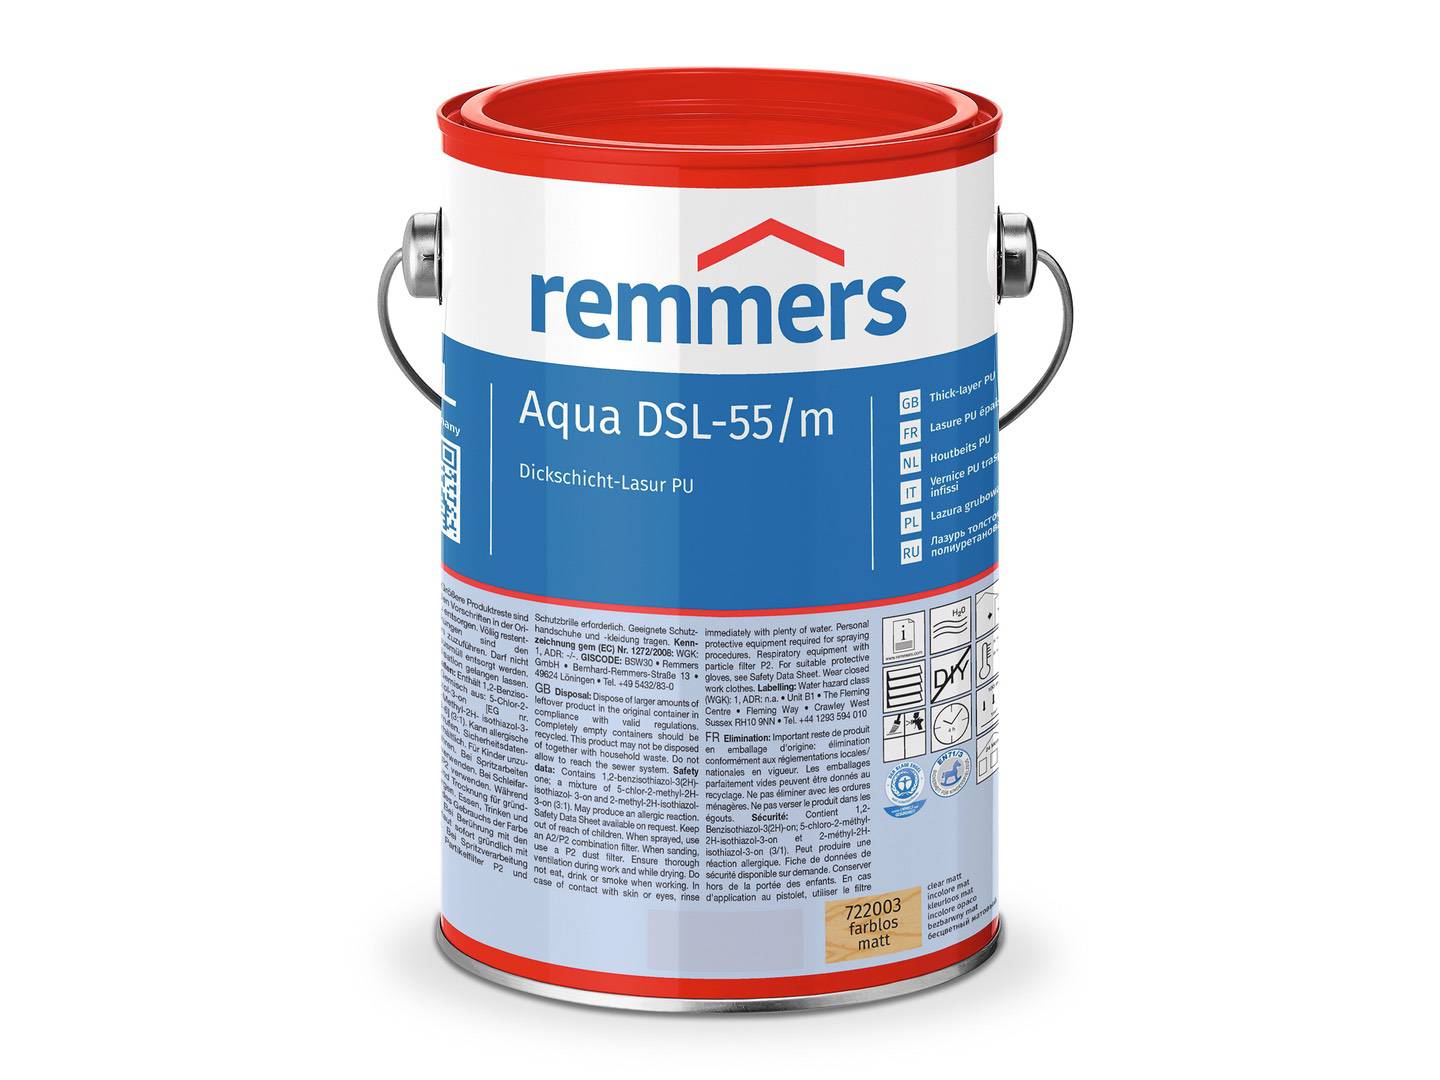 REMMERS Aqua DSL-55-Dickschicht-Lasur PU nussbaum (RC-660) seidenglänzend 0,75 l